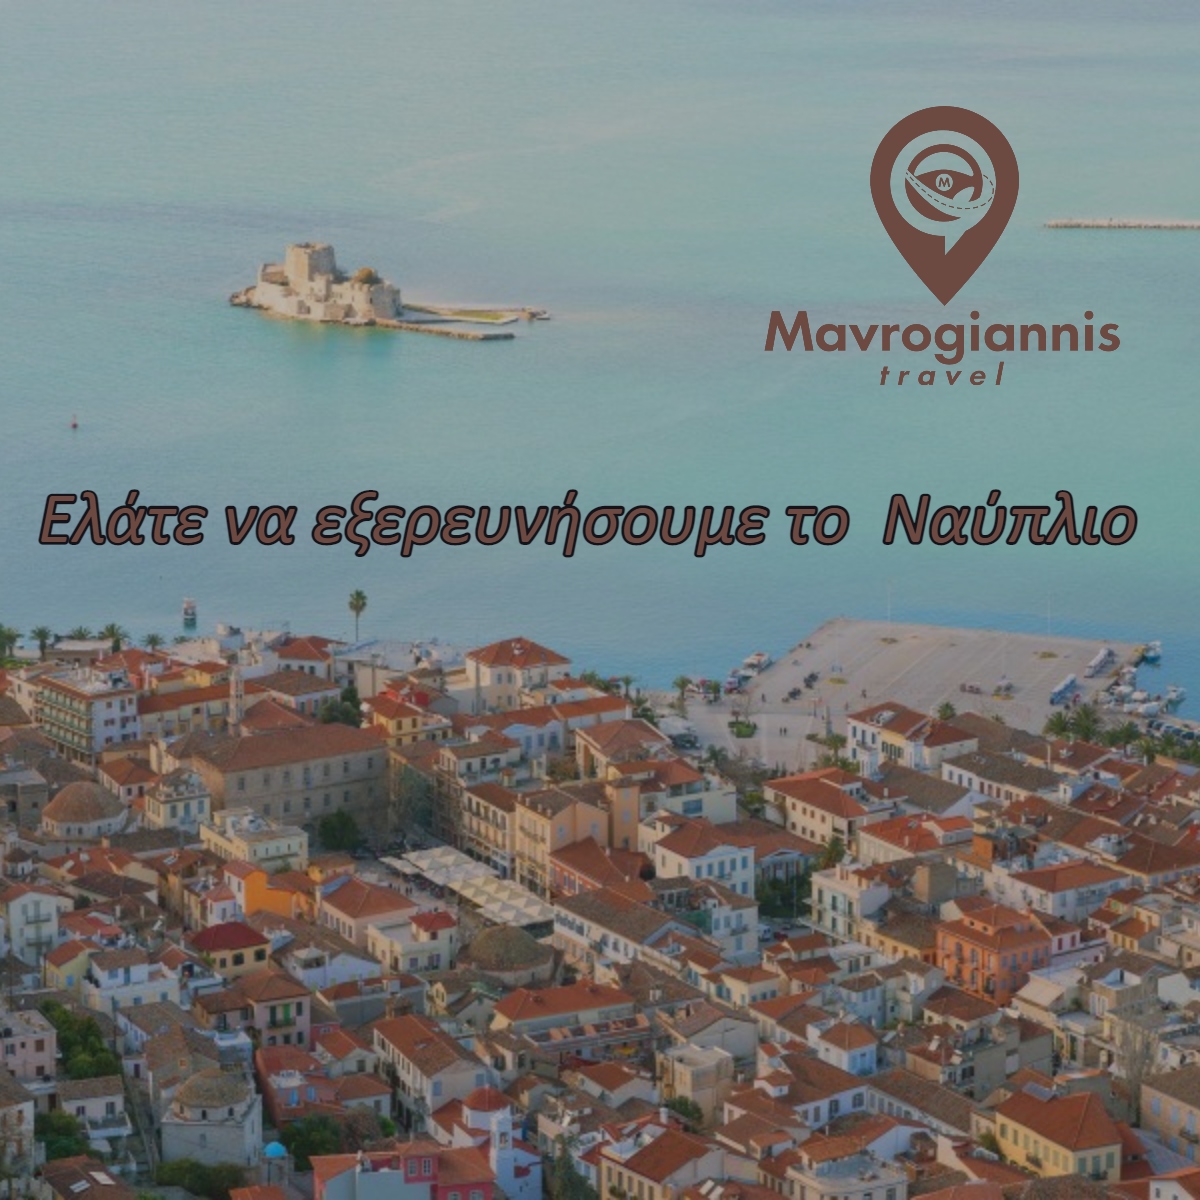 Ταξιδιωτικό γραφείο Mavrogiannis Travel ταξίδια από το 1980 Ναύπλιο